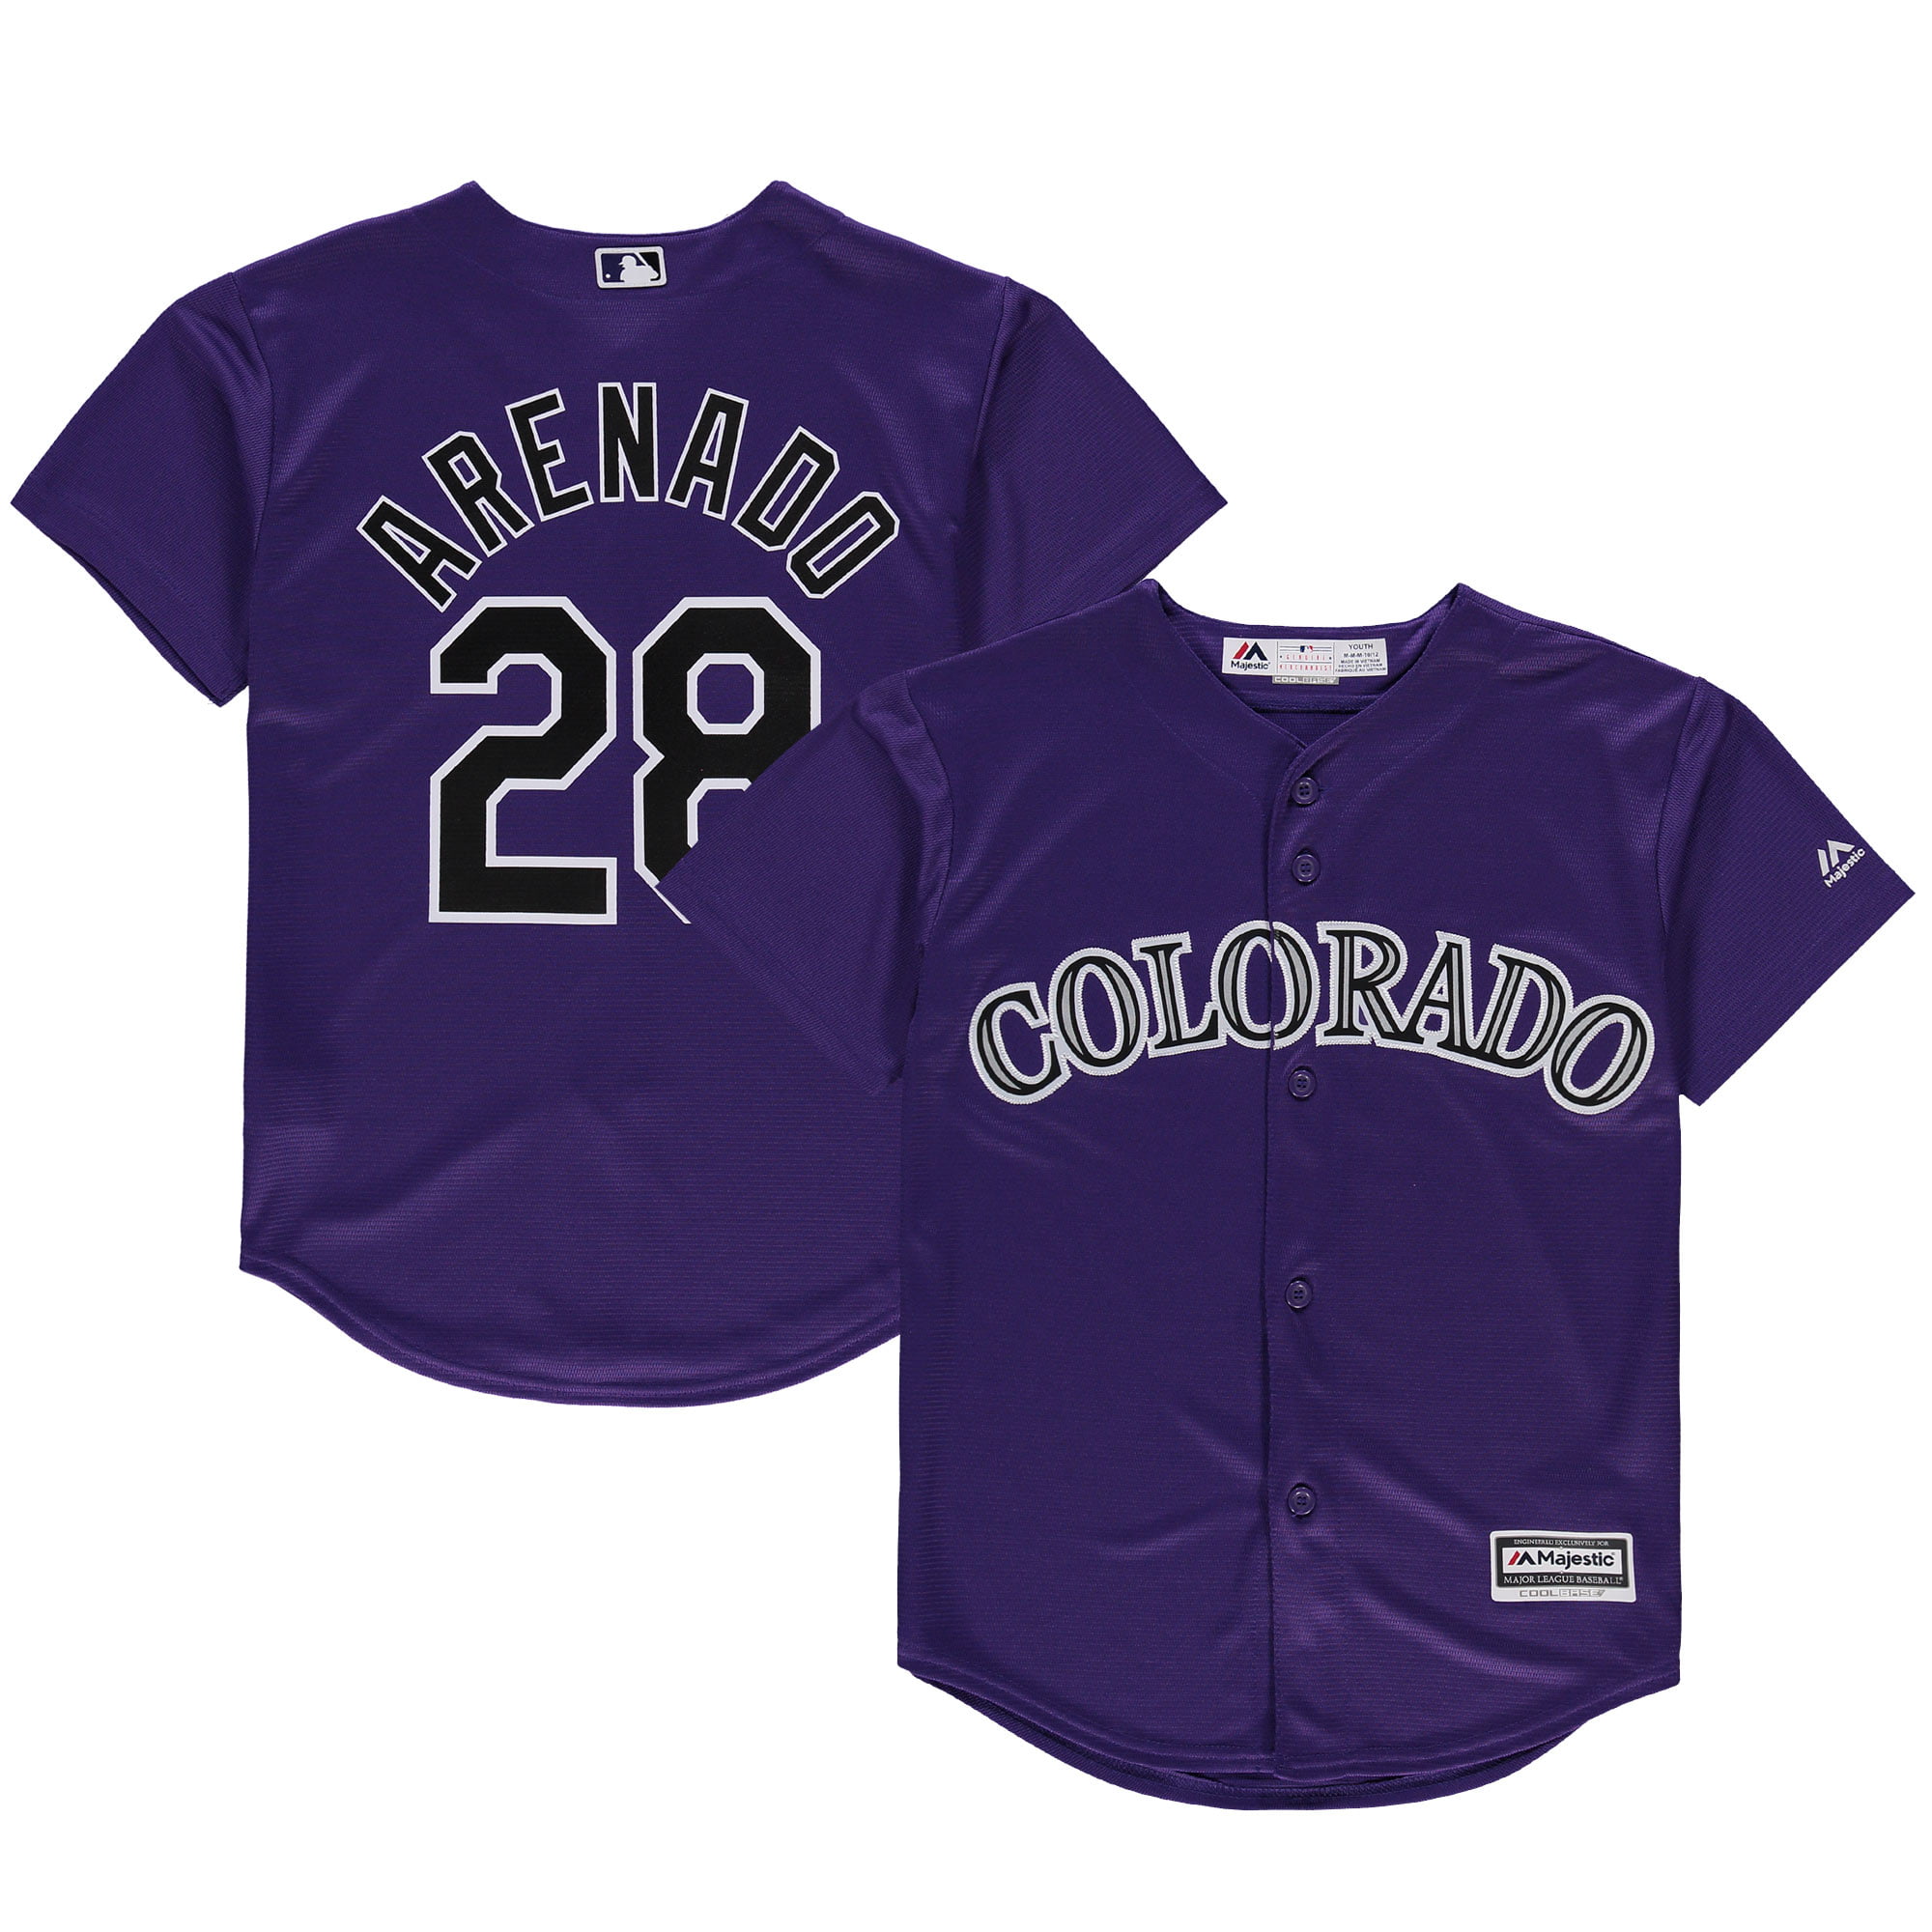 purple rockies jersey